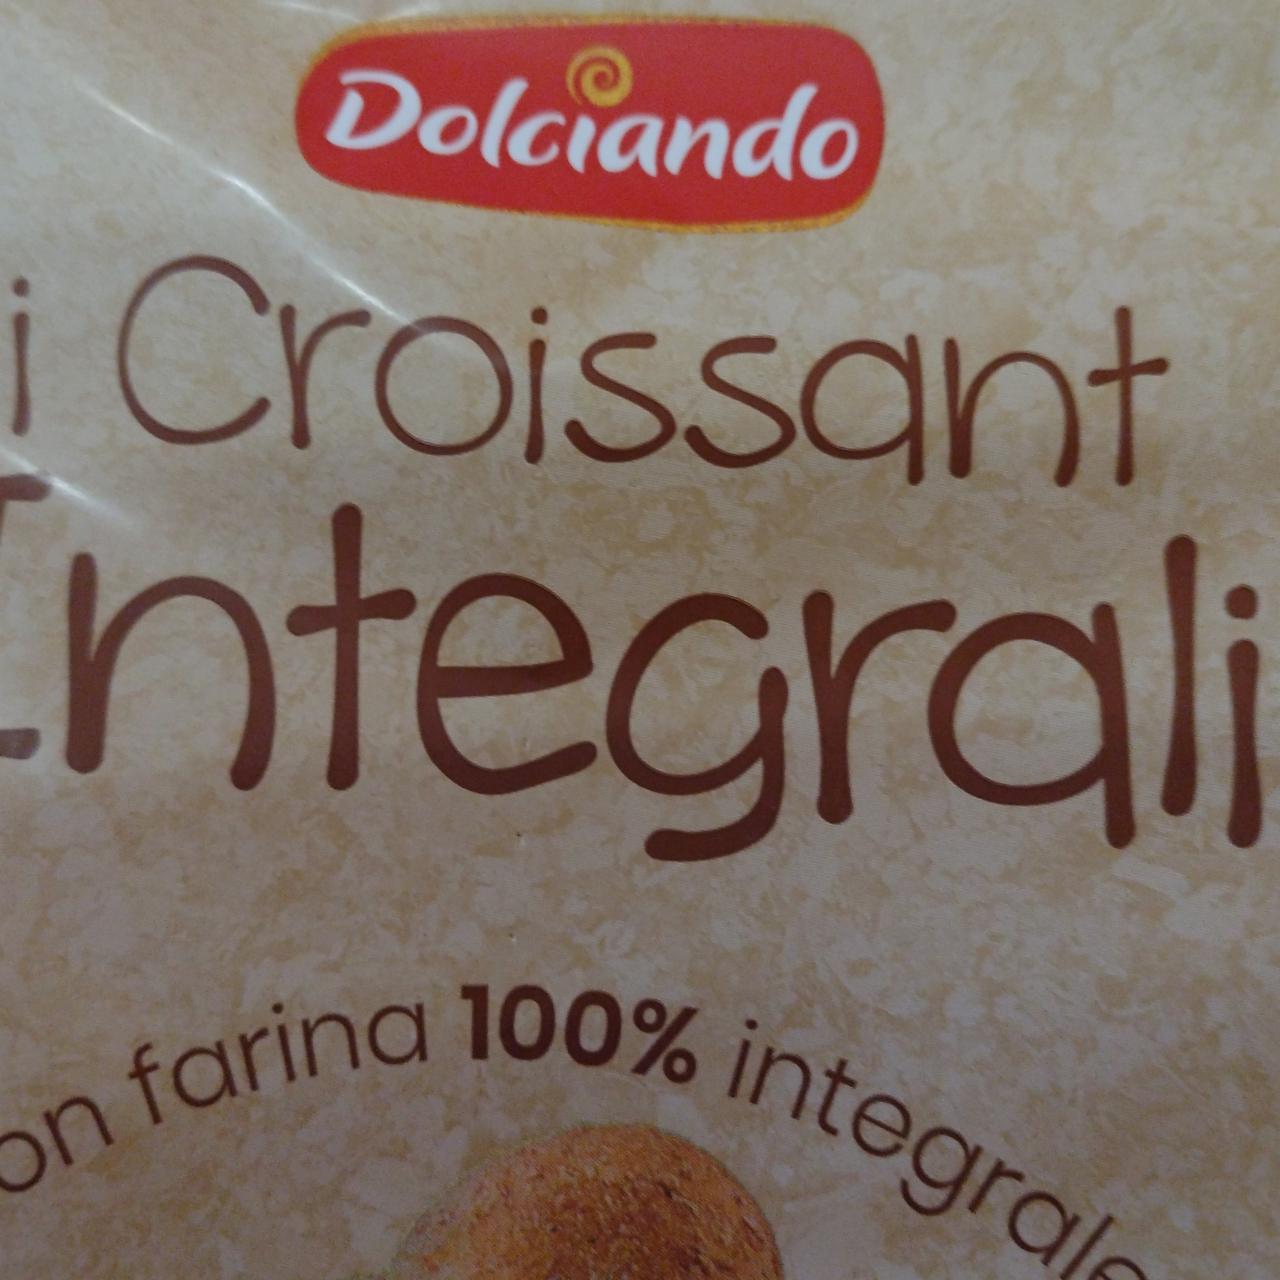 Fotografie - I croissant integrali Dolciando